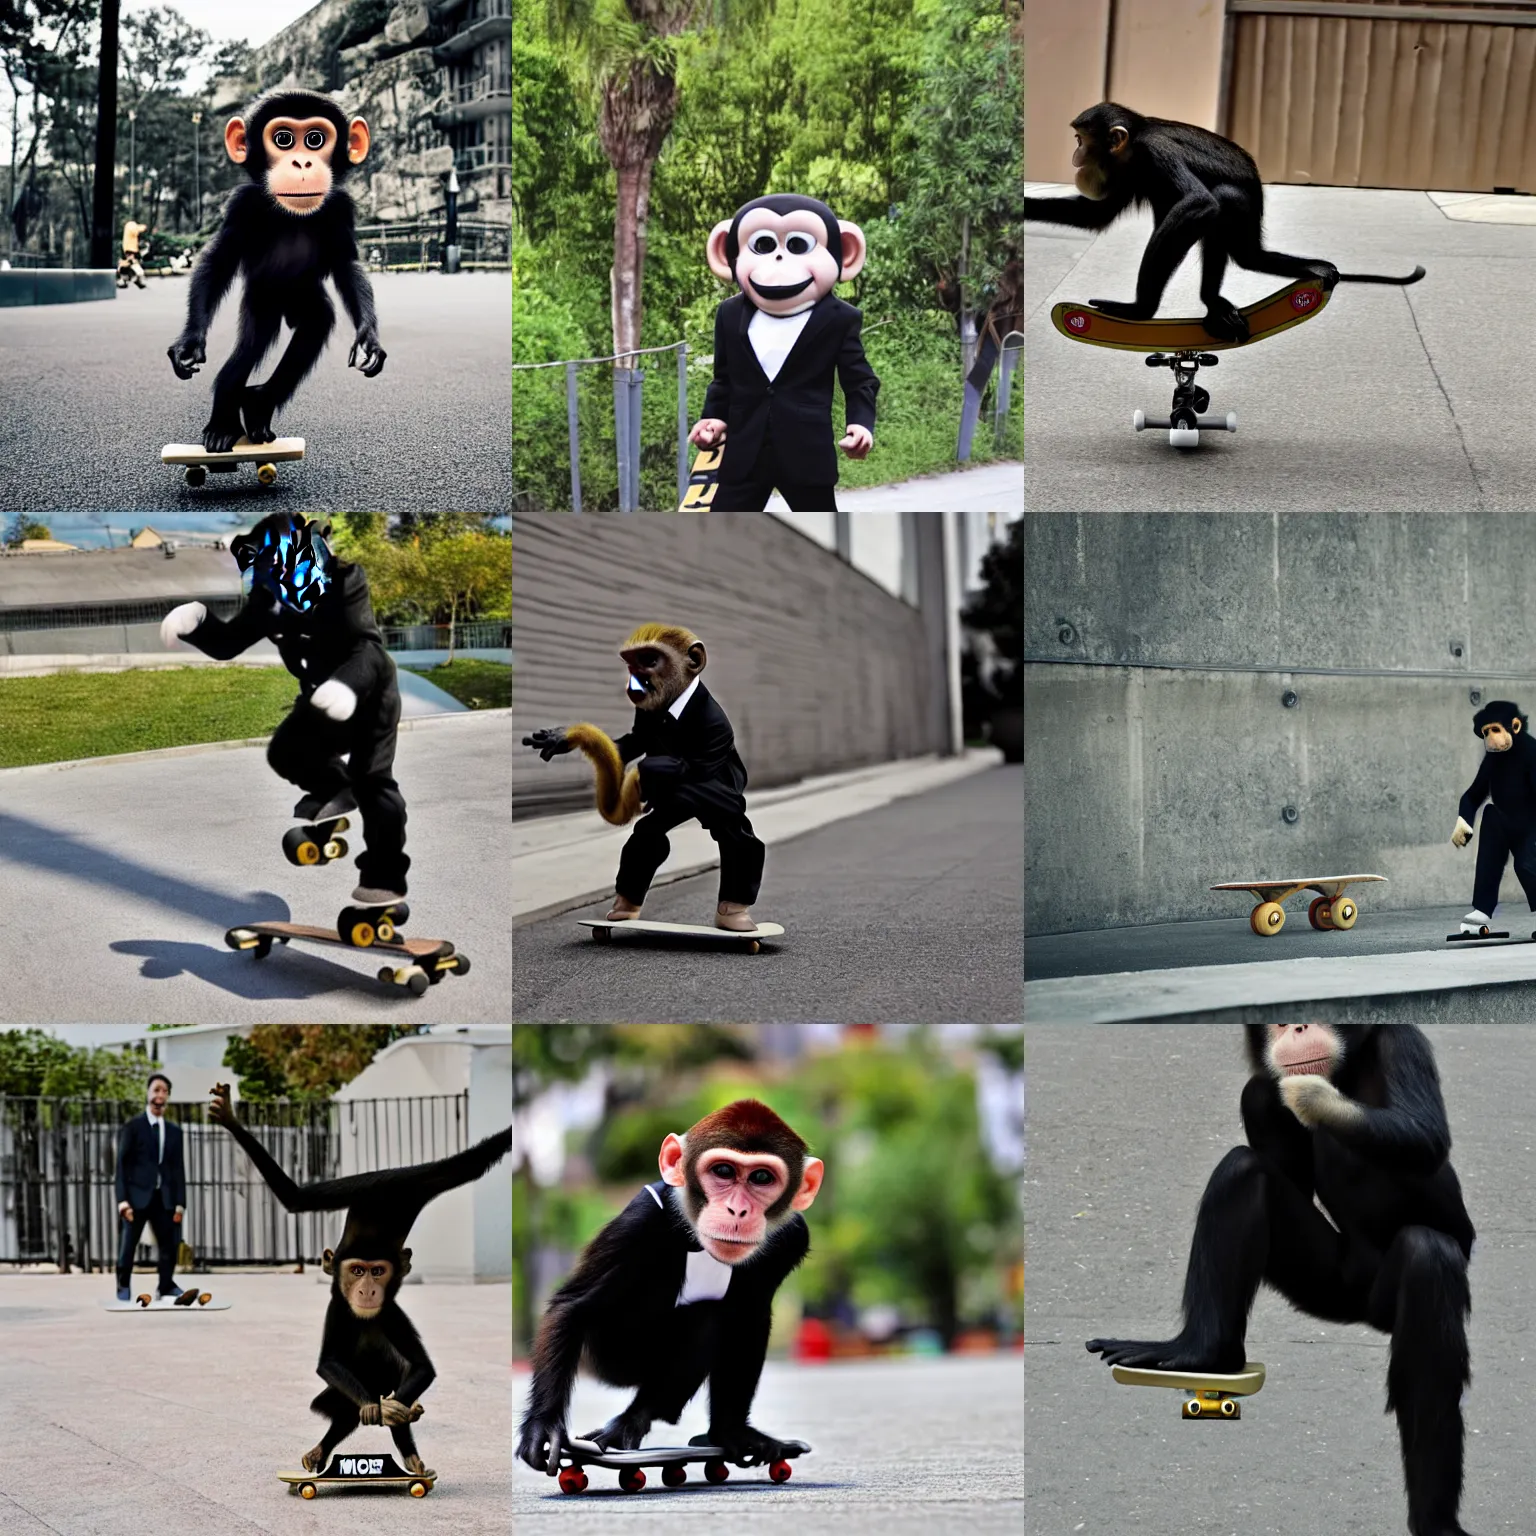 Prompt: monkey skateboarding wearing black suit